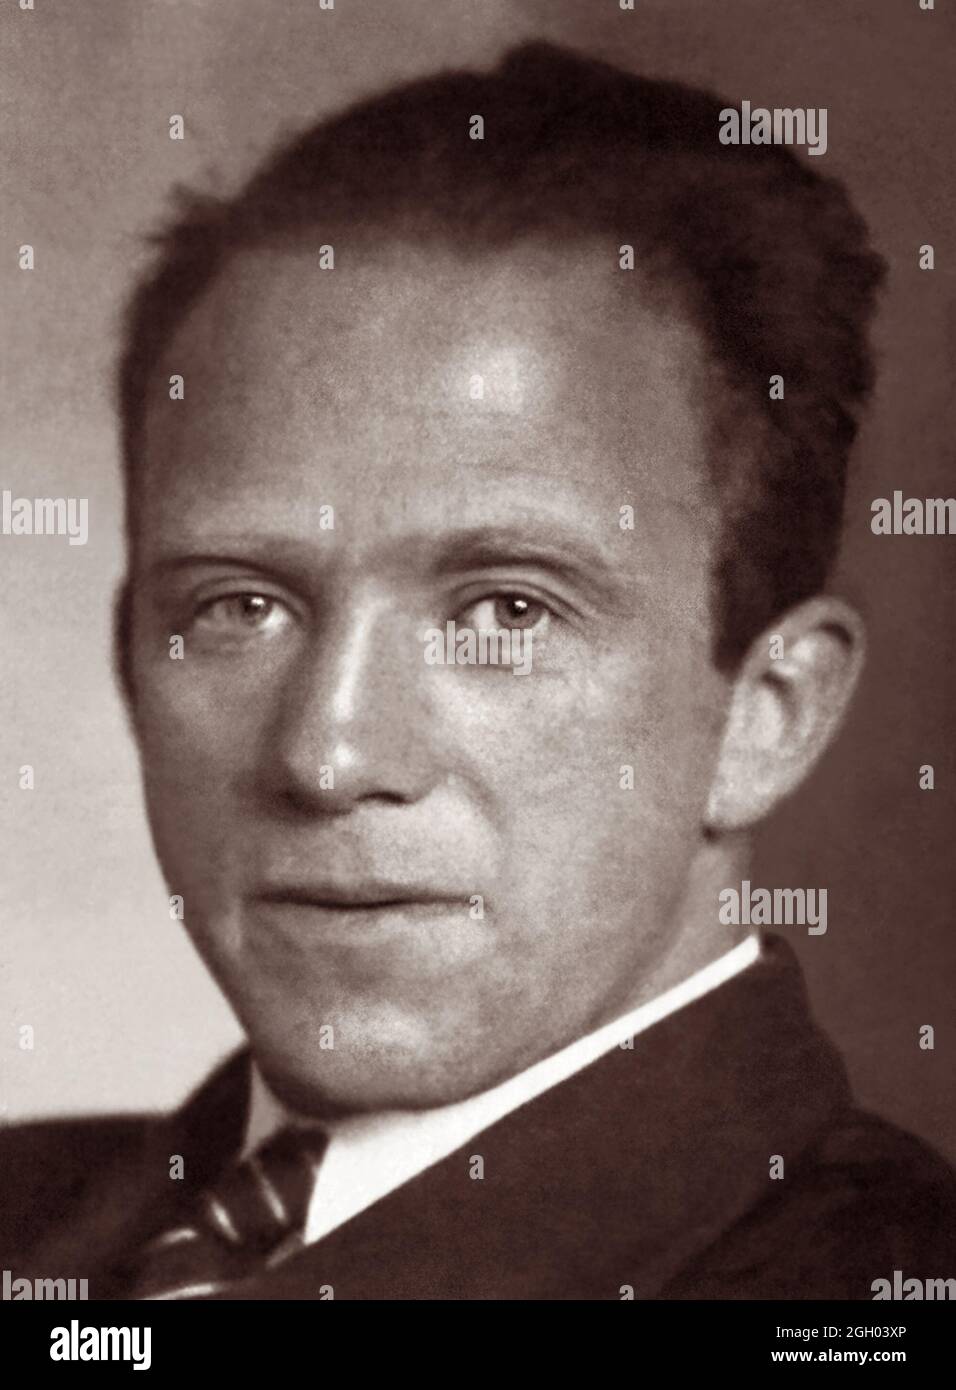 Porträt von Werner Heisenberg (1901-1976), deutscher theoretischer Physiker und Pionier der Quantenmechanik, die die 1932 Nobelpreis für Physik für seine Theorie und Anwendungen der Quantenmechanik gewonnen. Stockfoto